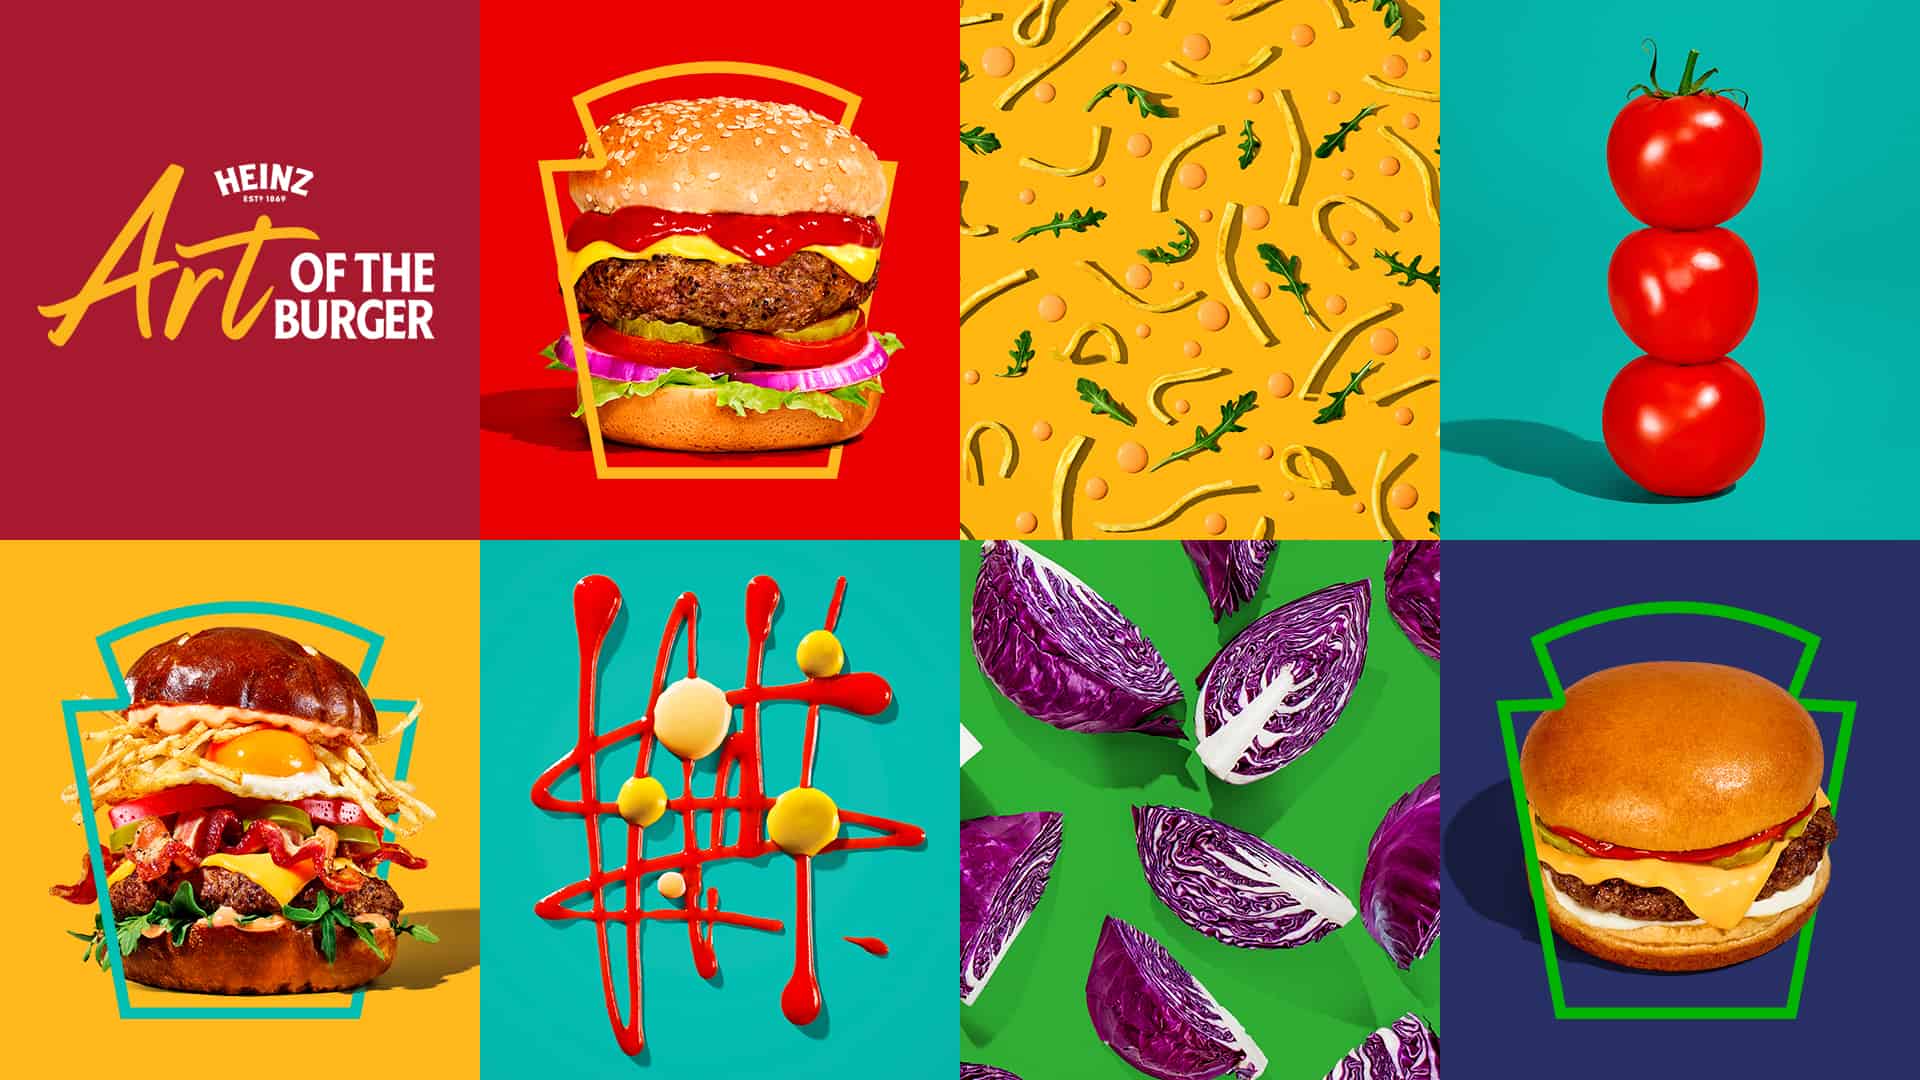 Heinz Art of Burger Ingredients